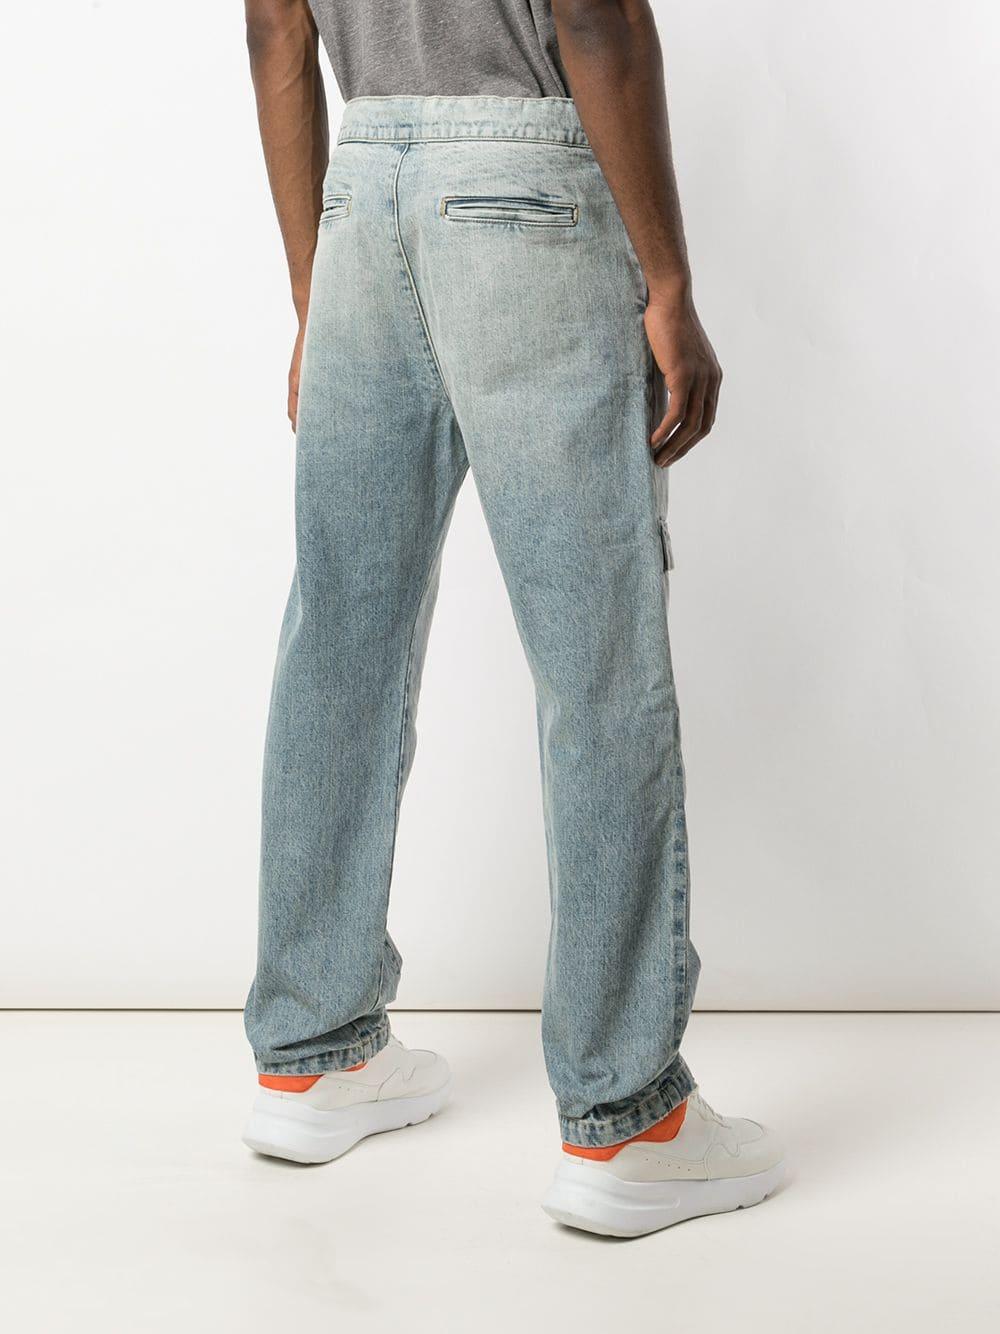 Fear Of God Straight-leg Denim Jeans in Blue for Men - Lyst